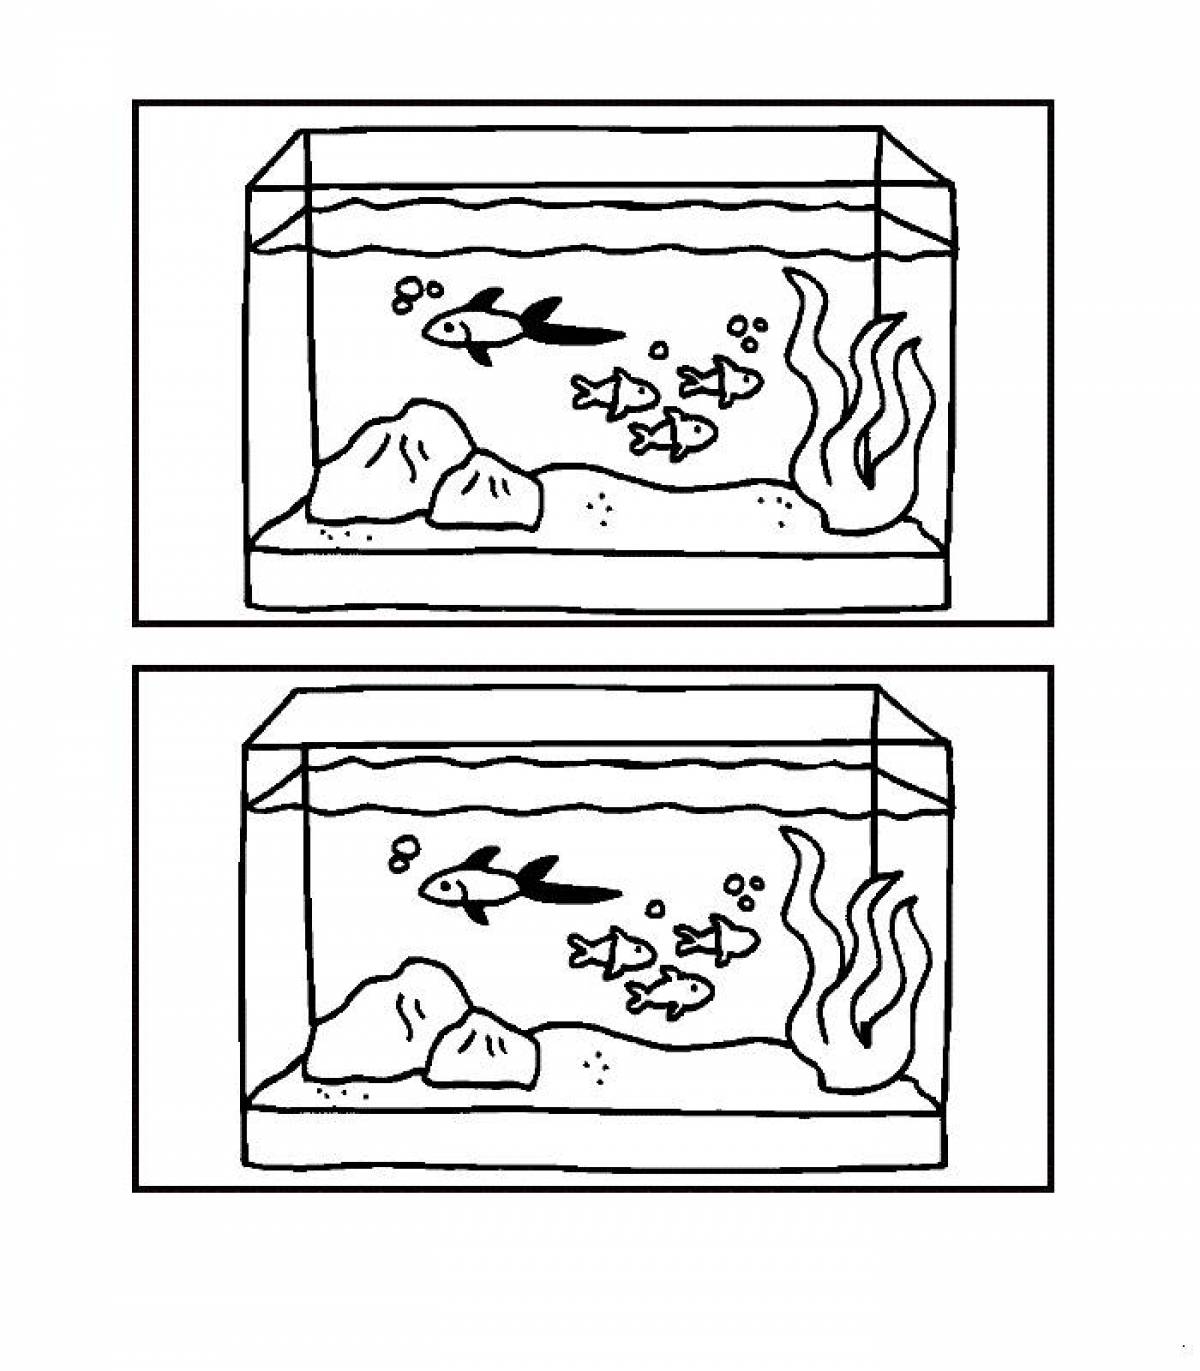 Two aquariums